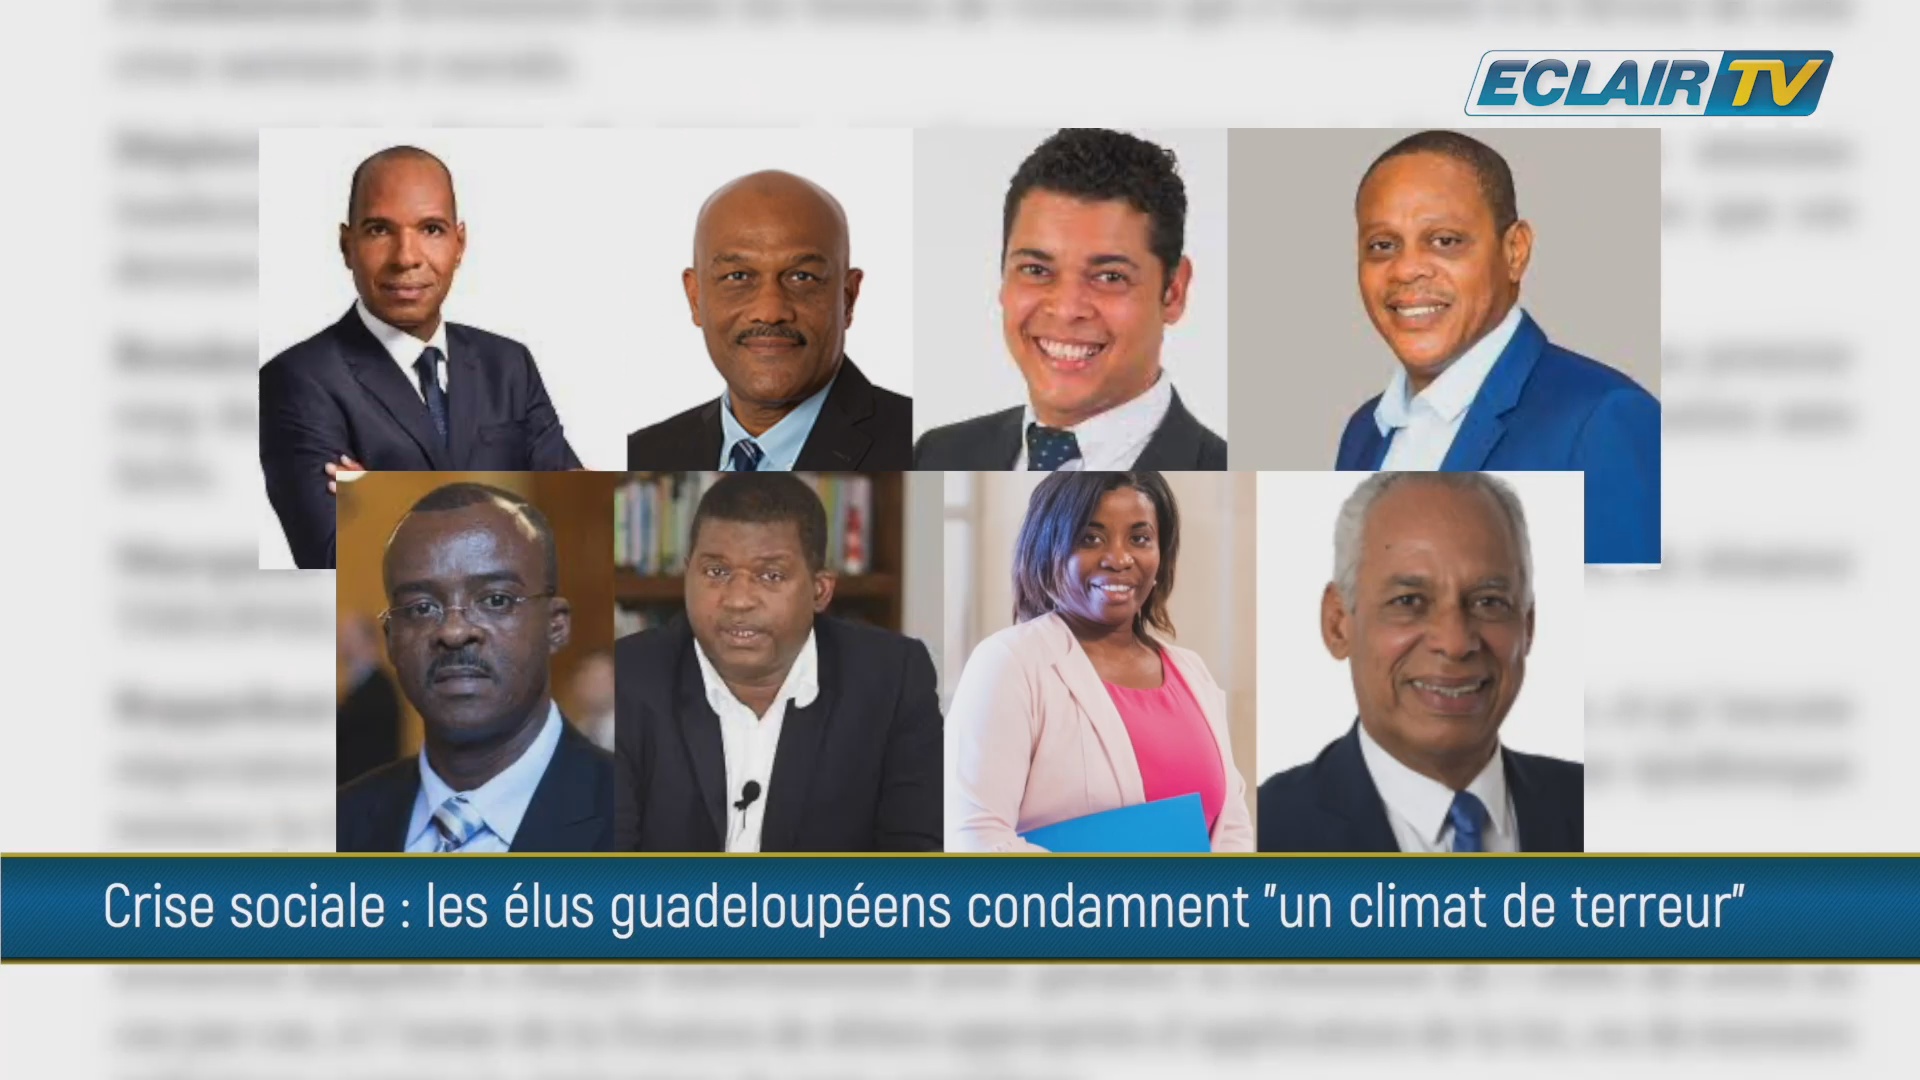 Guadeloupe crise. Climat de terreur. Les élus guadeloupéens condamnent fermement ces agissements